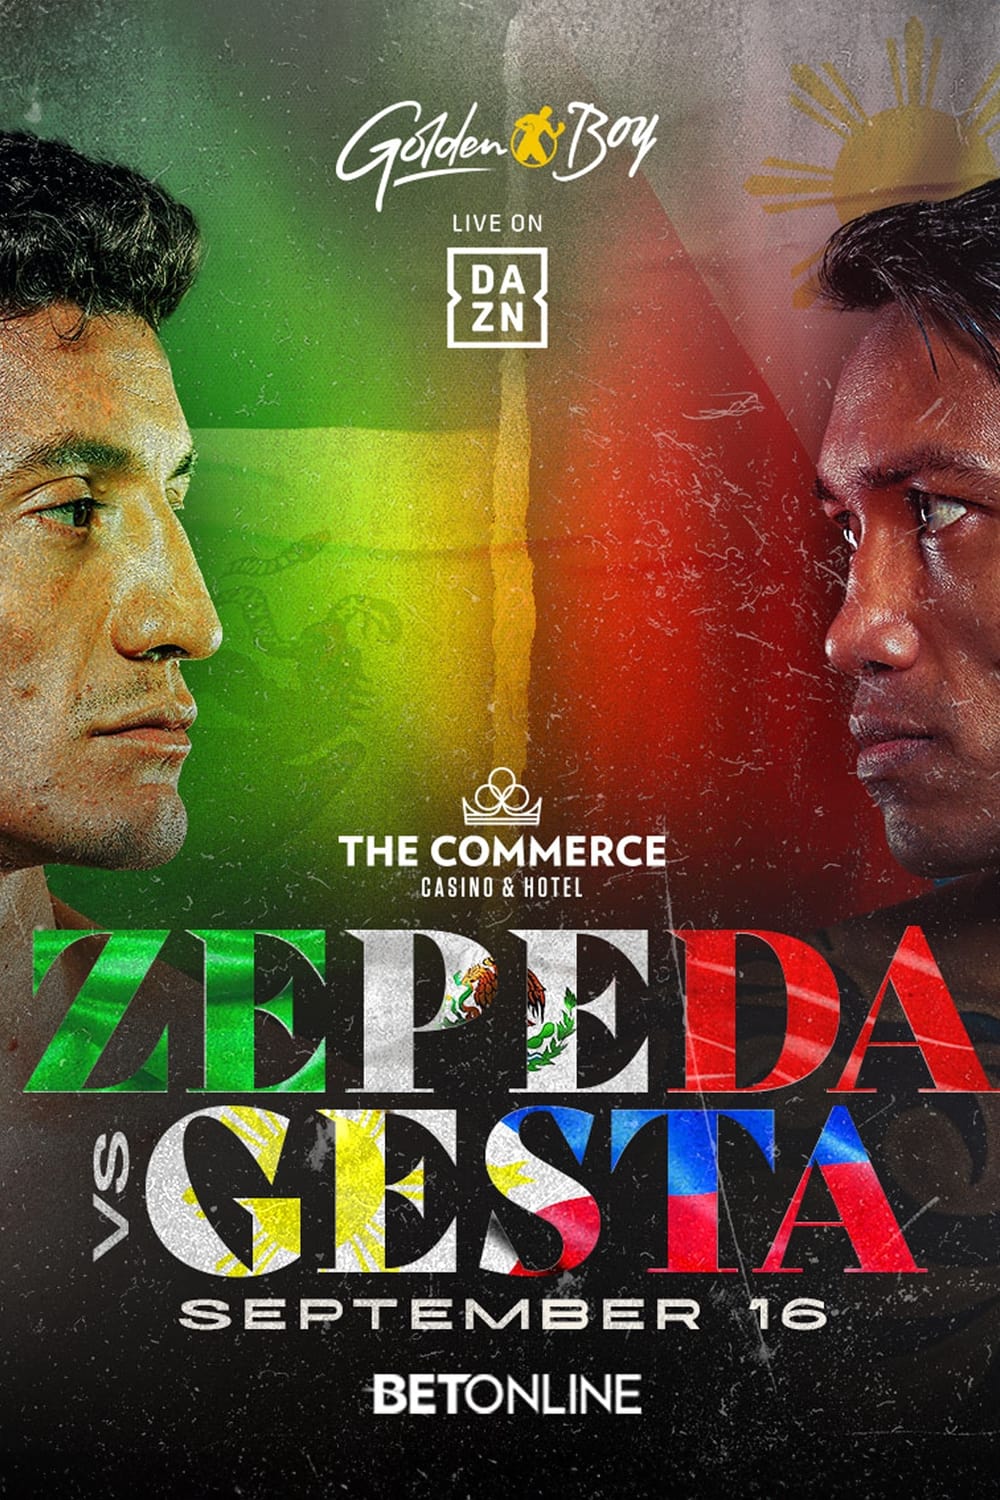 William Zepeda vs. Mercito Gesta